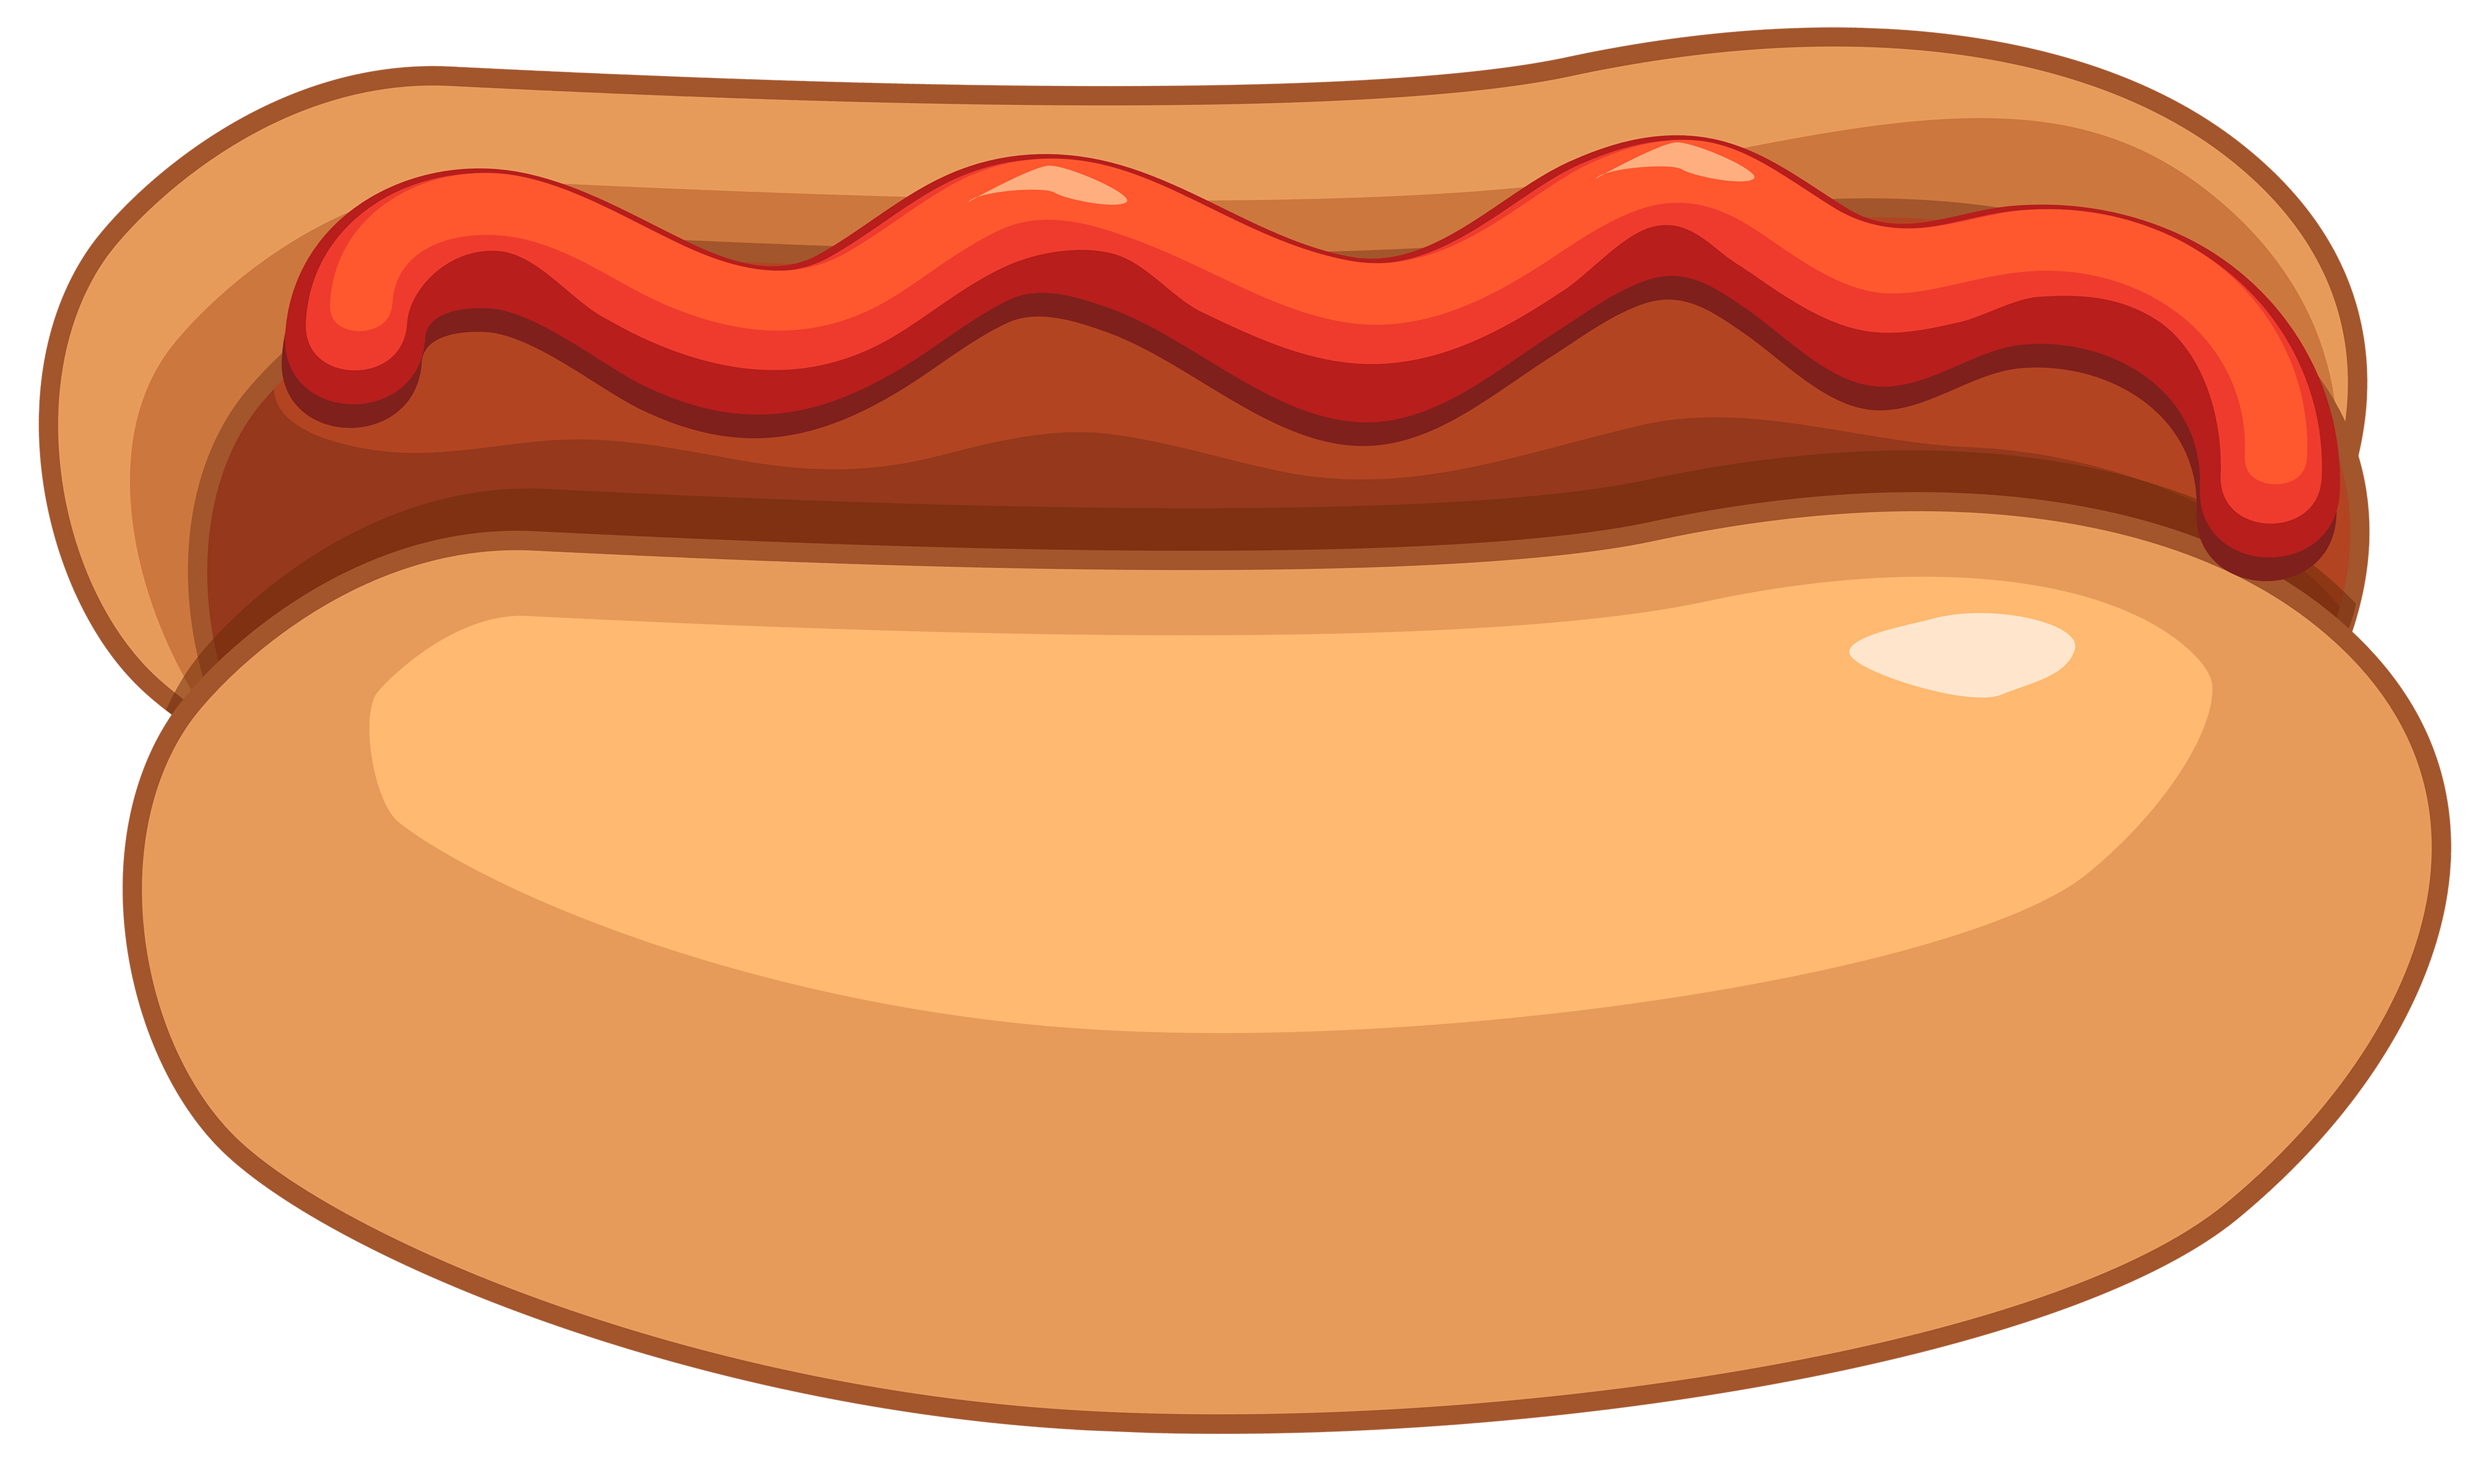 Hot dog and ketchup clipart web